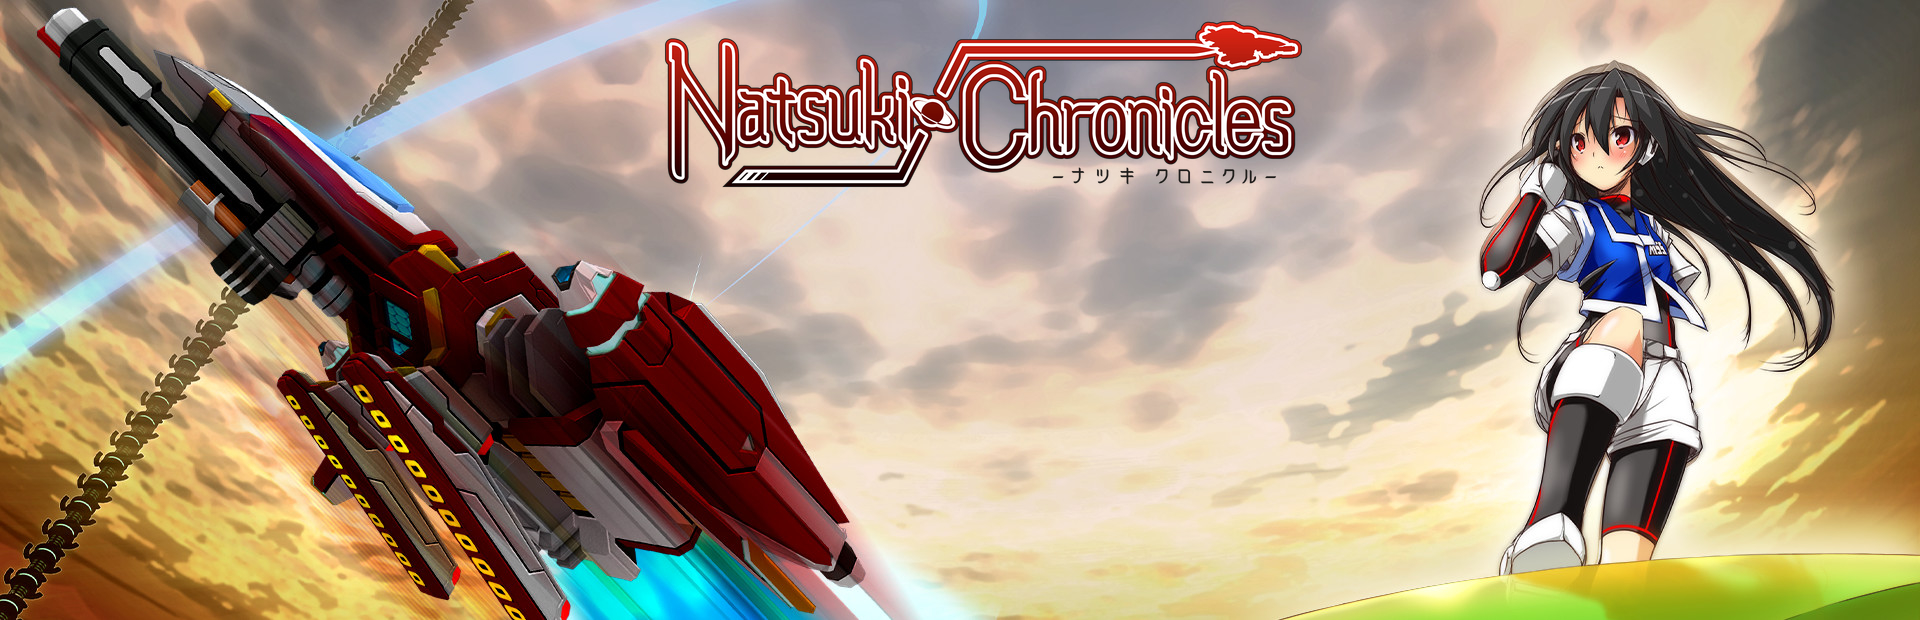 دانلود بازی Natsuki Chronicles برای پی سی | گیمباتو